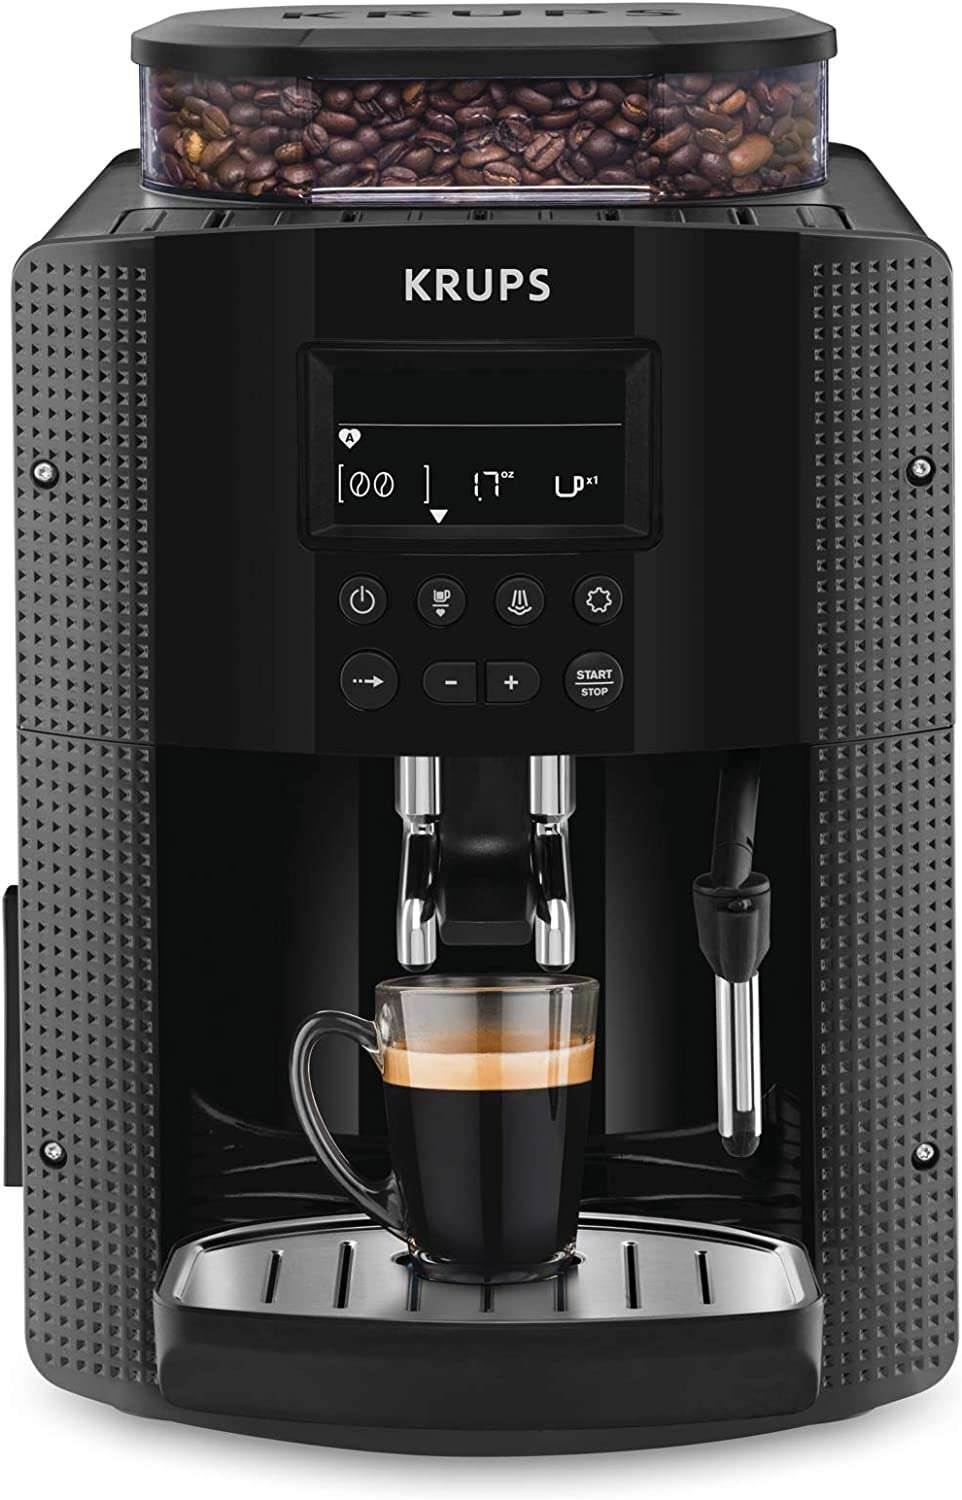 La machine à café à grain broyeur Krups Essential YY8135FD à prix réduit sur Amazon © Amazon